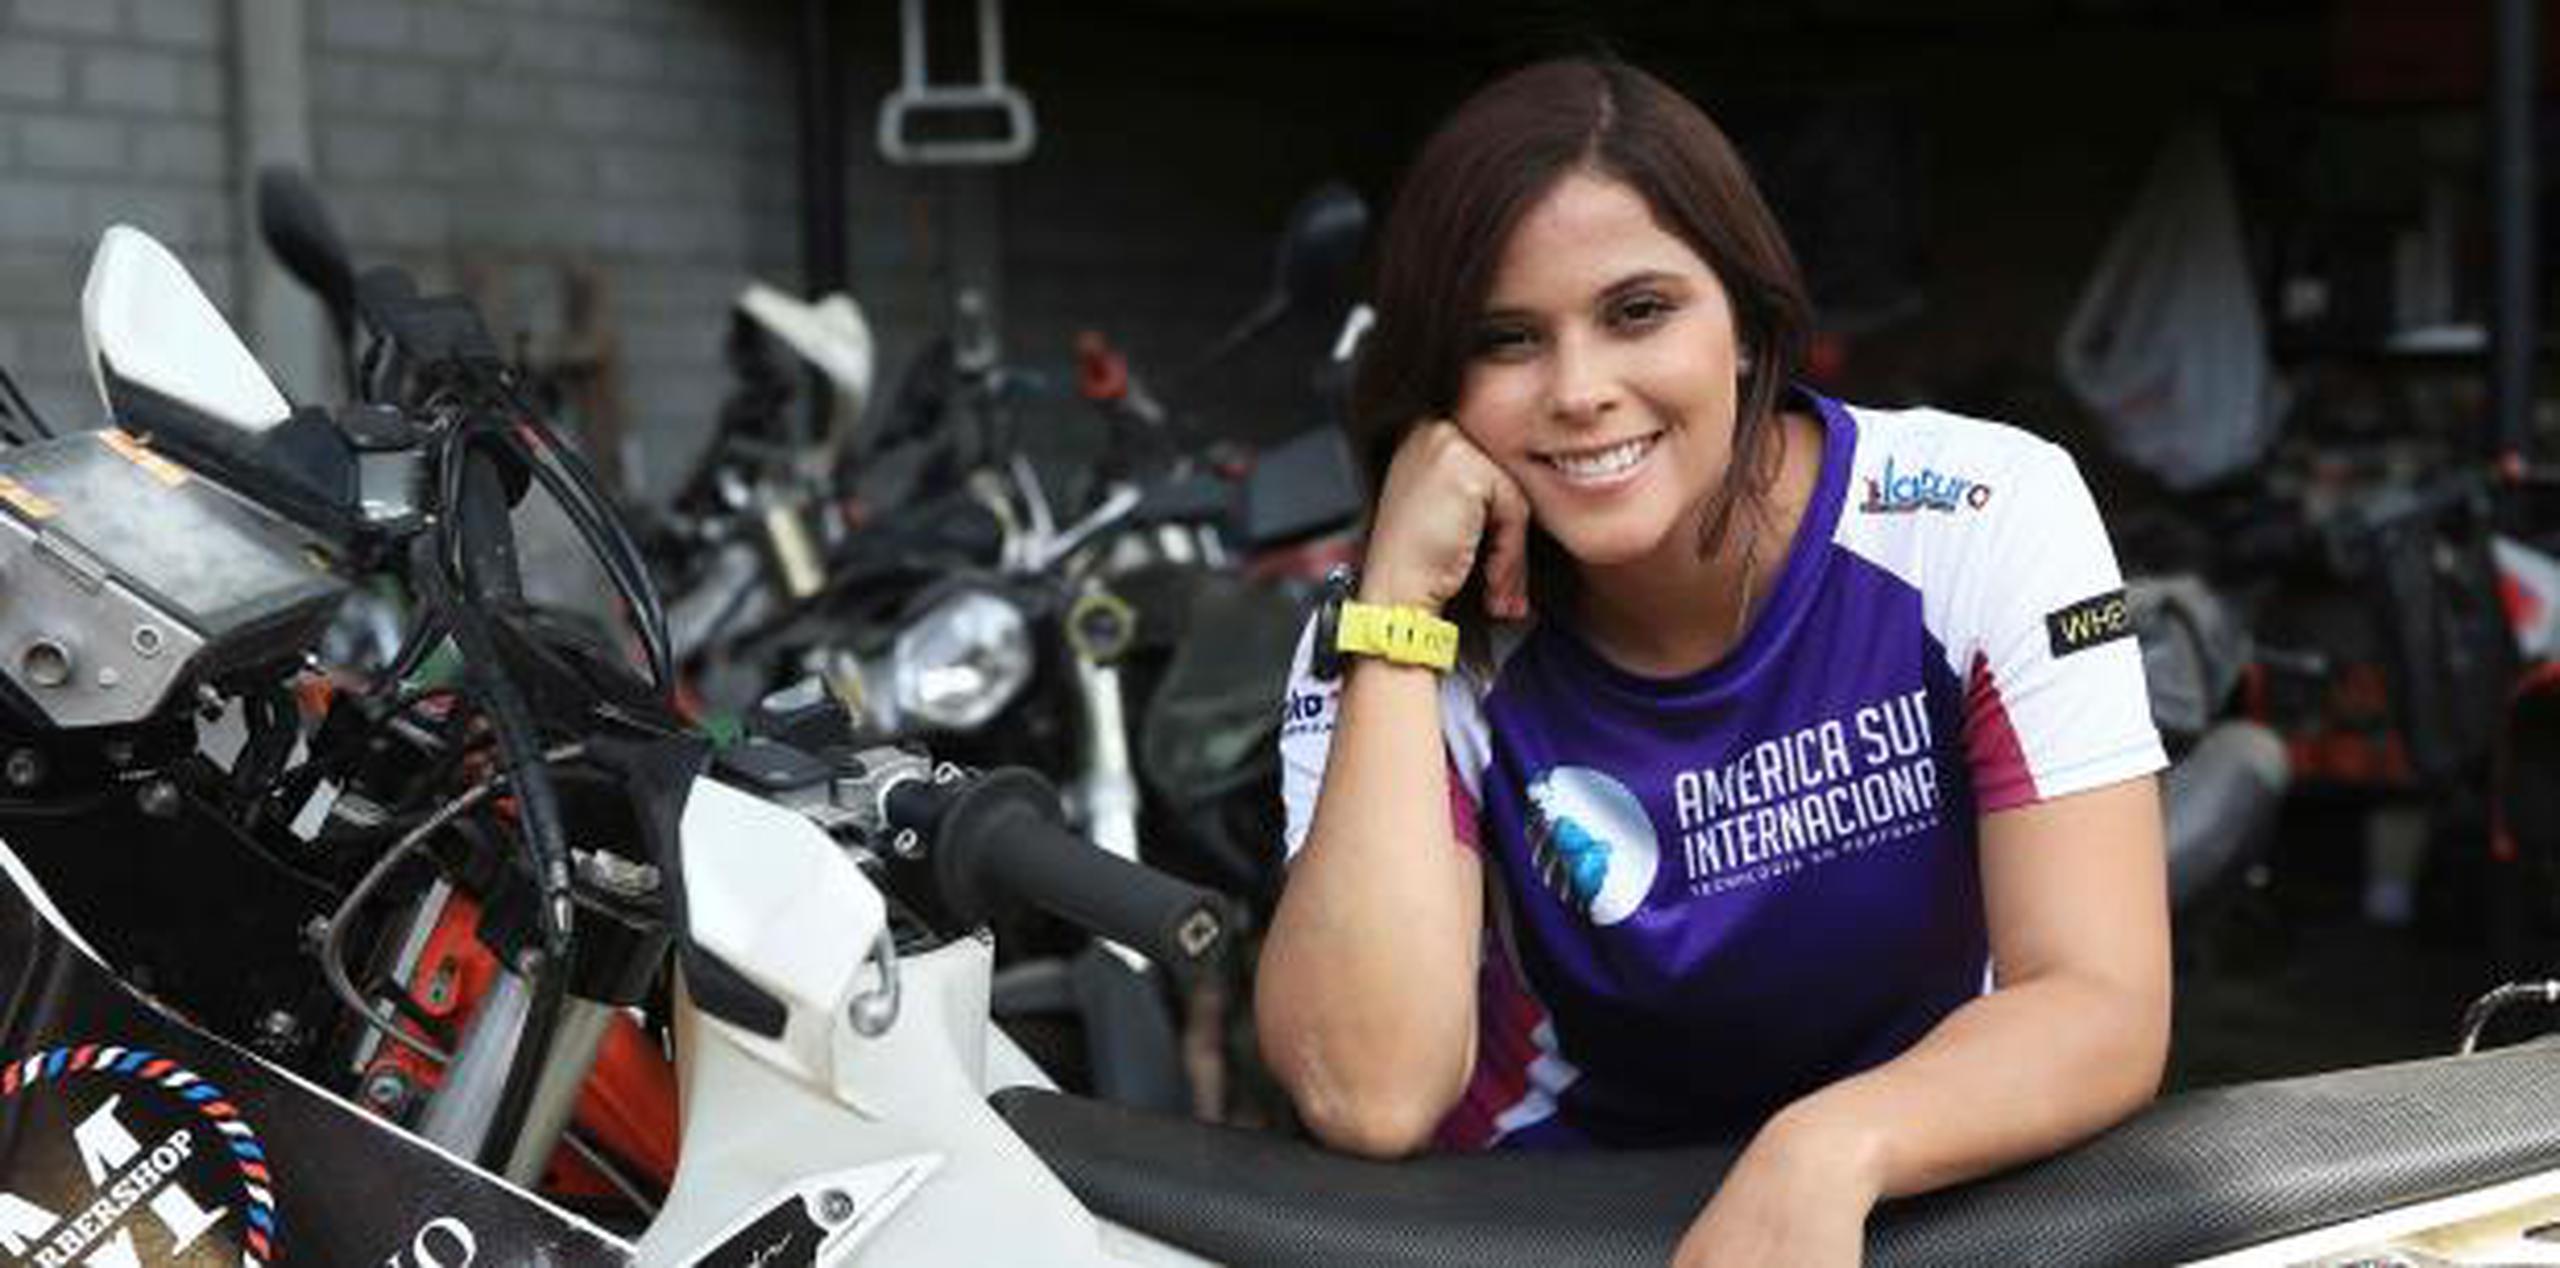 Gianna Velarde, de 24 años, posa junto a su moto, contó como aprendió a correr entre las dunas de Lima con su padre, en desobediencia a su madre, con su casco y su peluca. (EFE)

